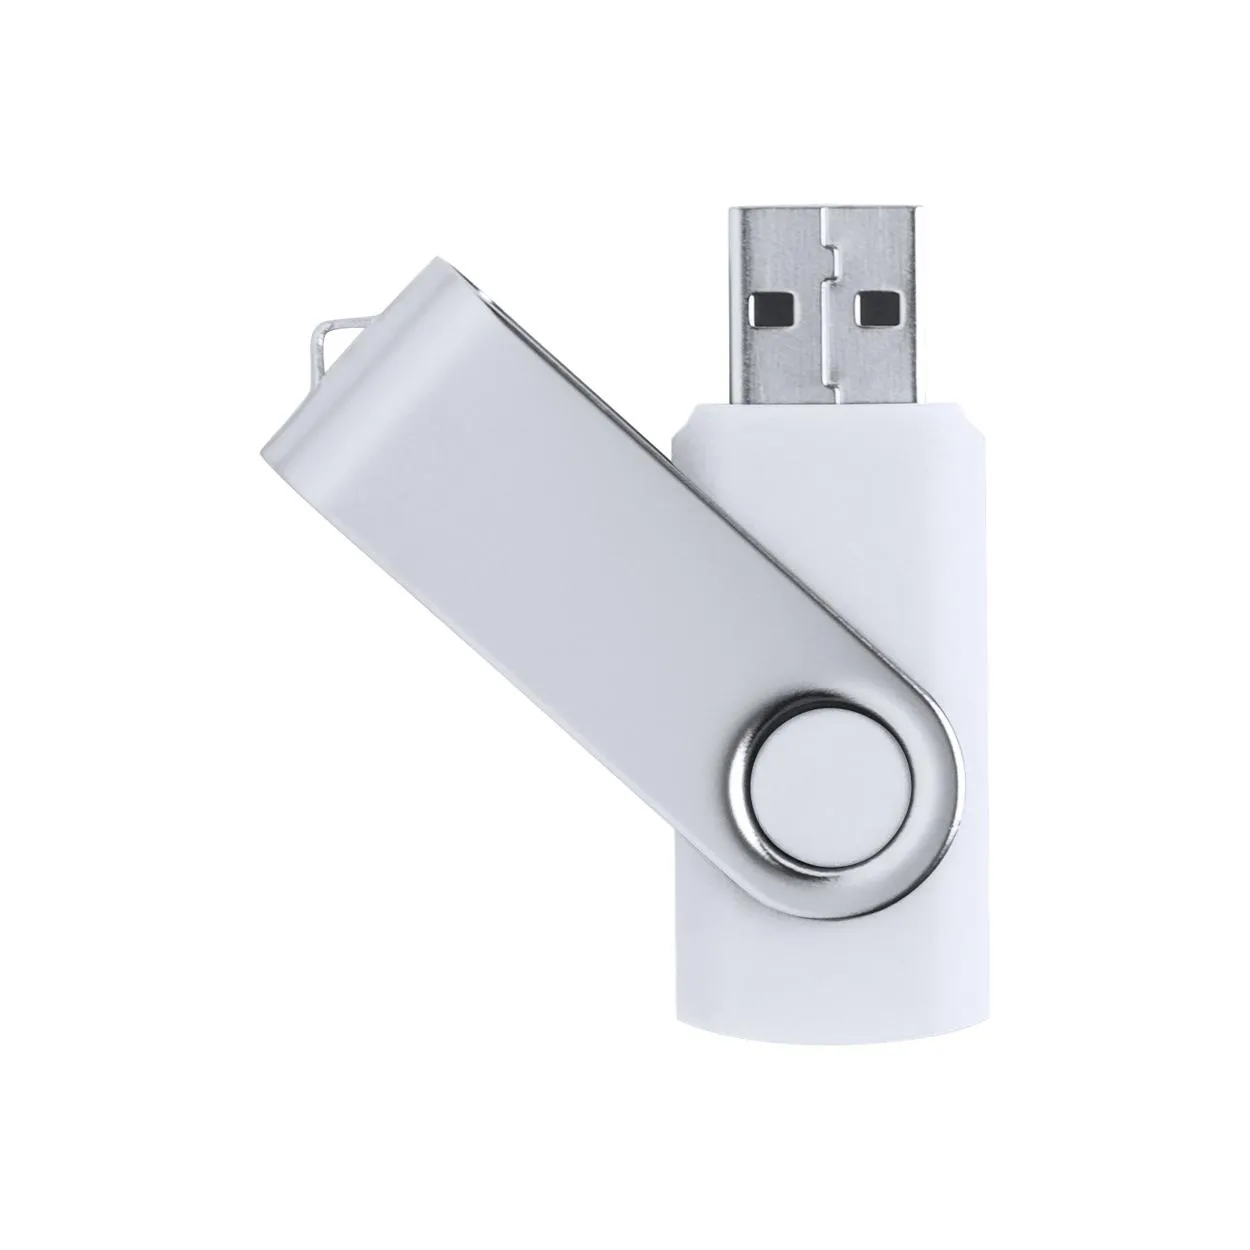 Memorie USB Rebik 16Gb alb